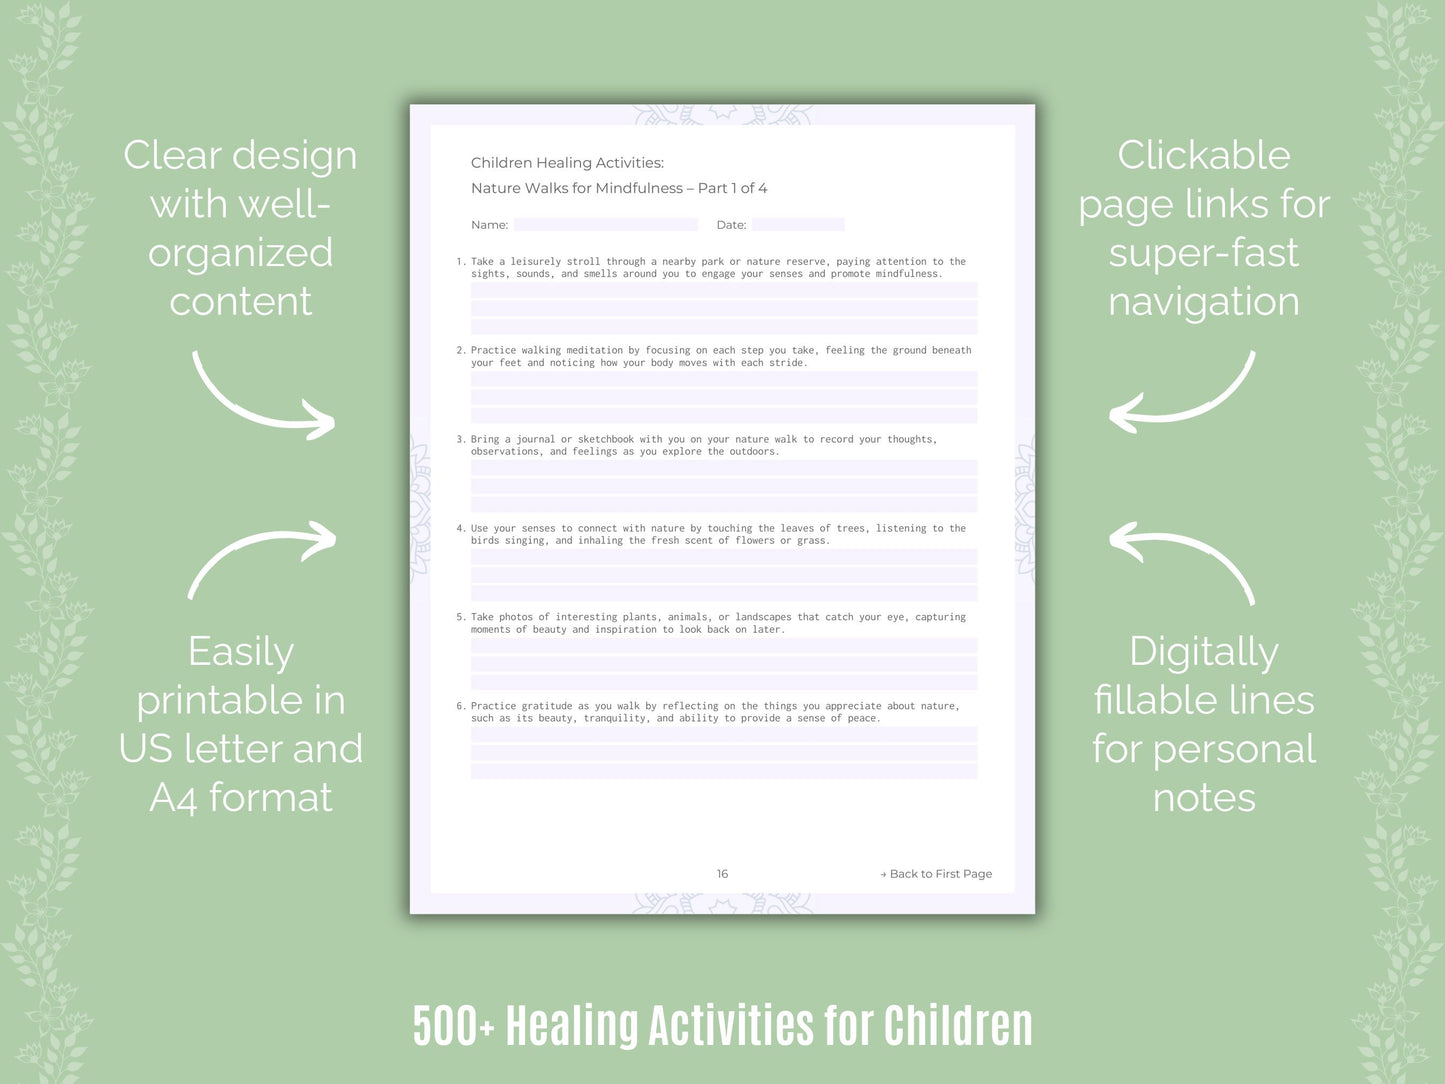 Children Healing Activities Resource